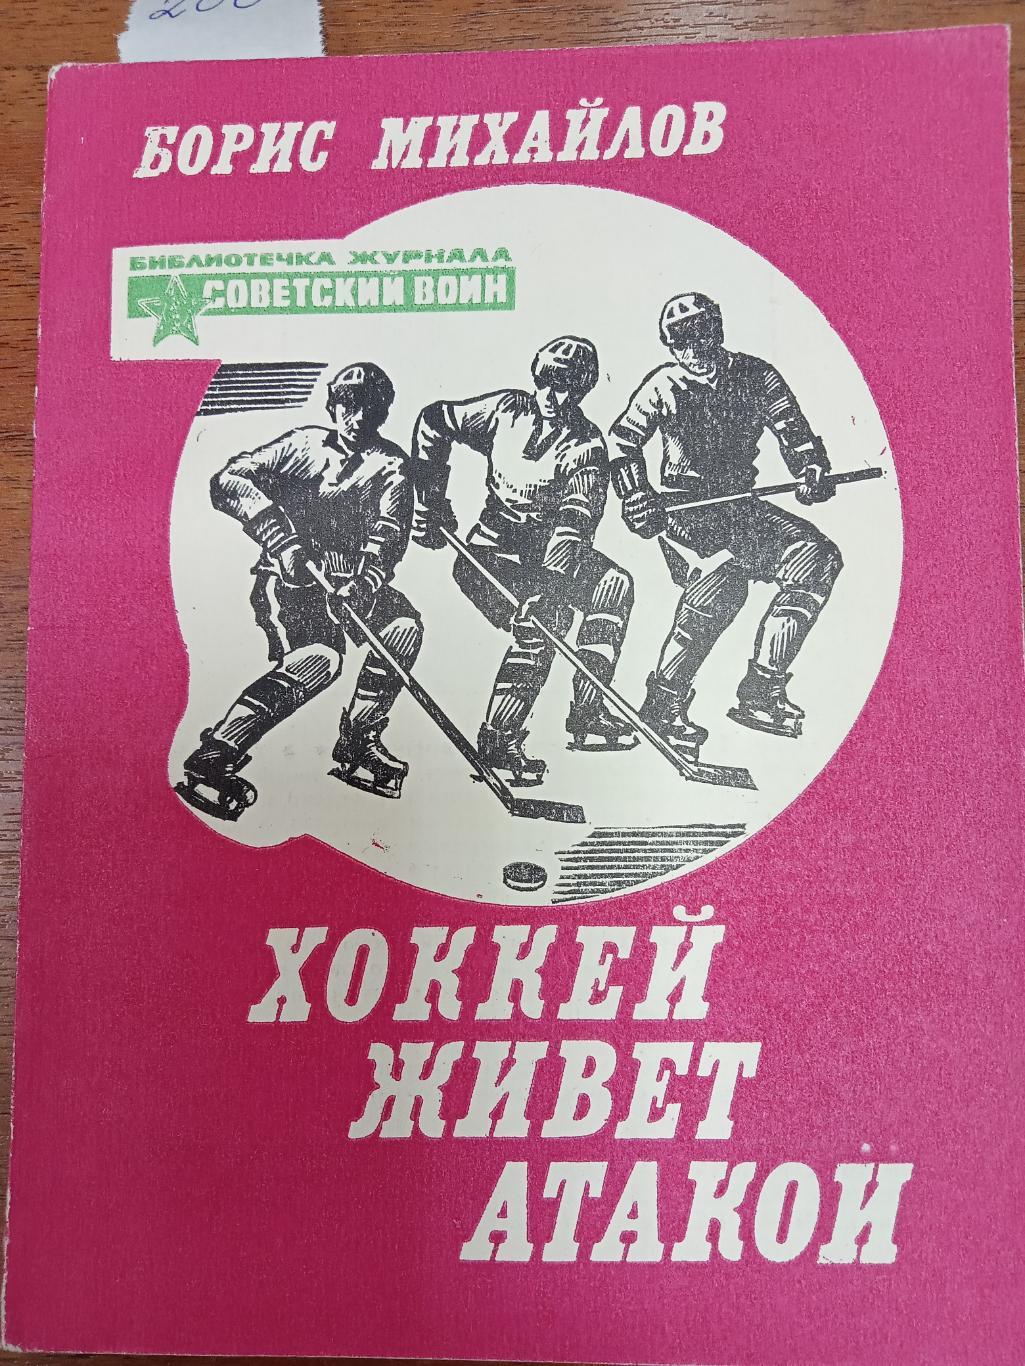 Борис Михайлов. Хоккей живет атакой .БК Советский воин. 1982